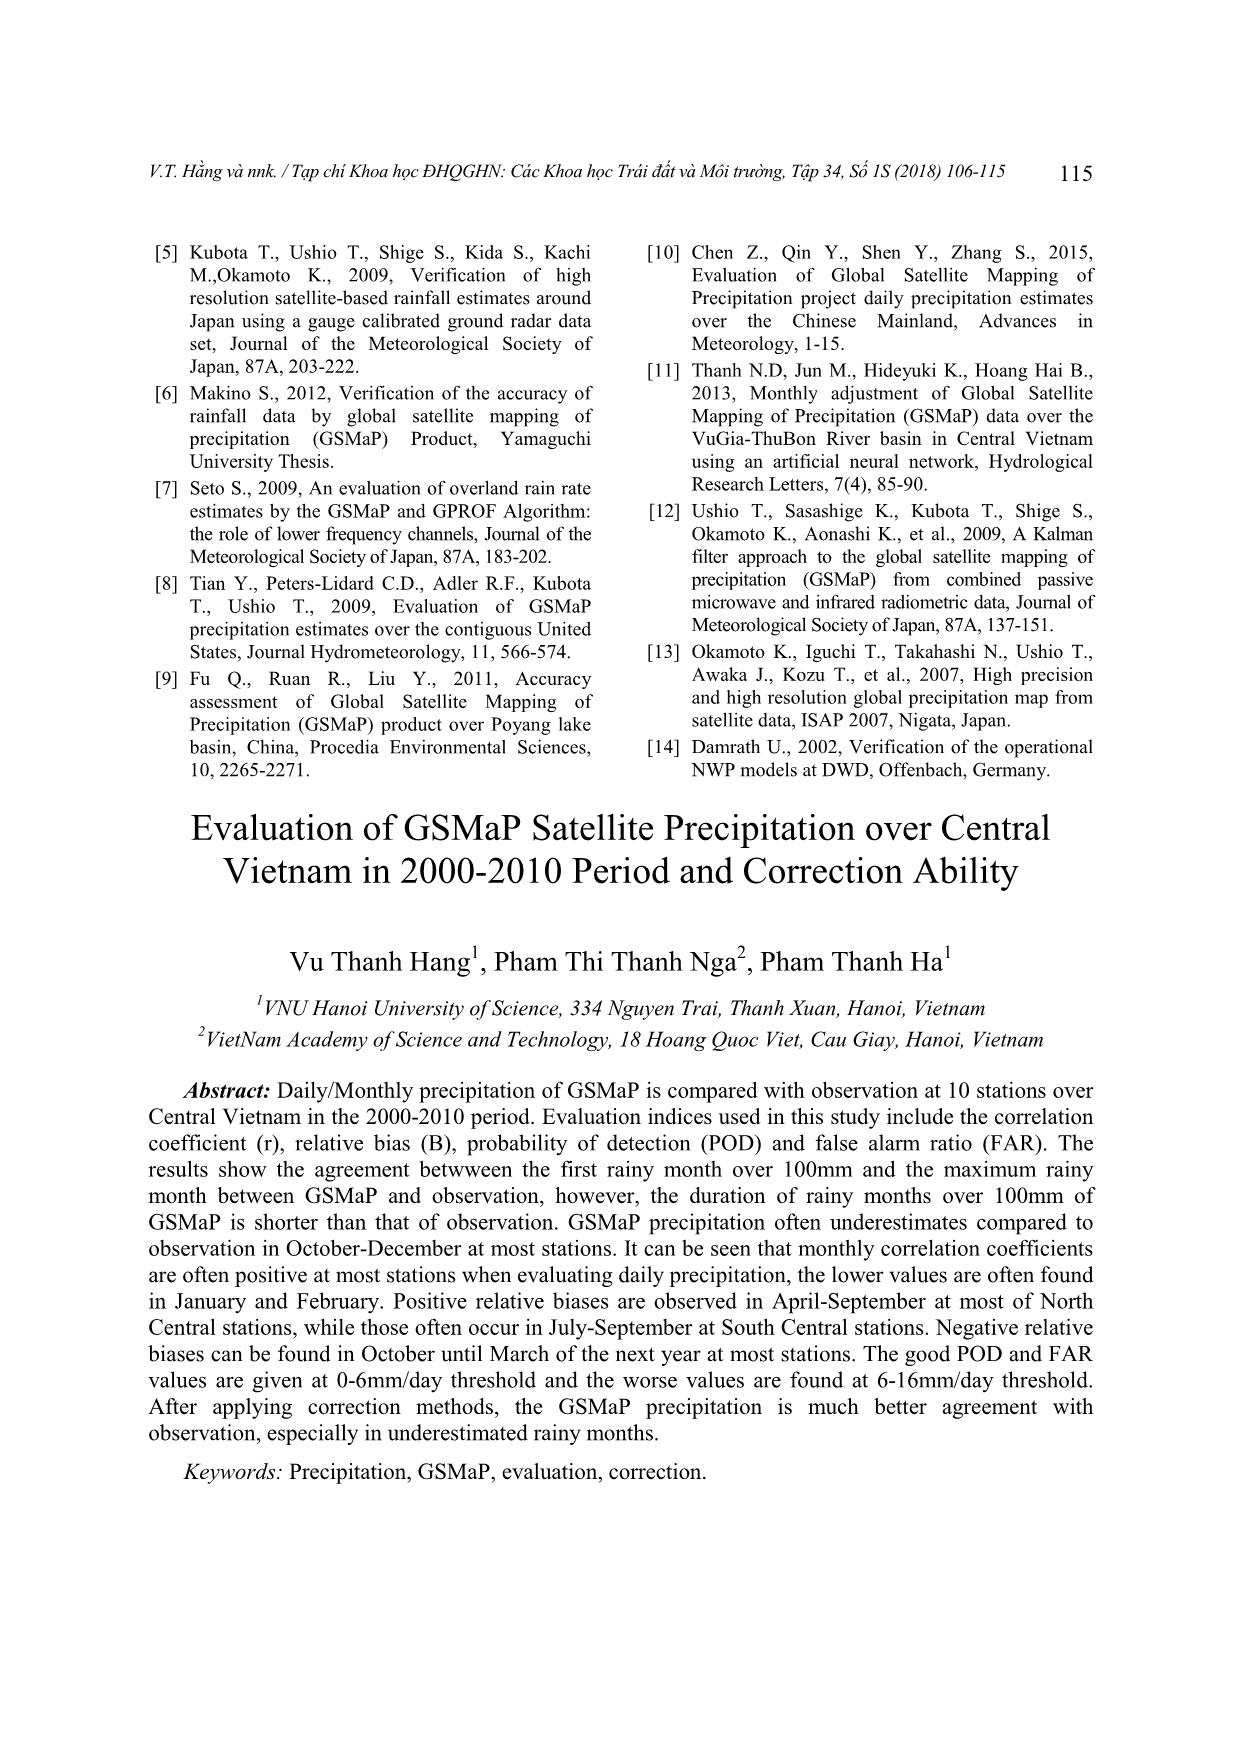 Đánh giá số liệu mưa vệ tinh GSMaP cho khu vực Trung Bộ Việt Nam giai đoạn 2000-2010 và khả năng hiệu chỉnh trang 10